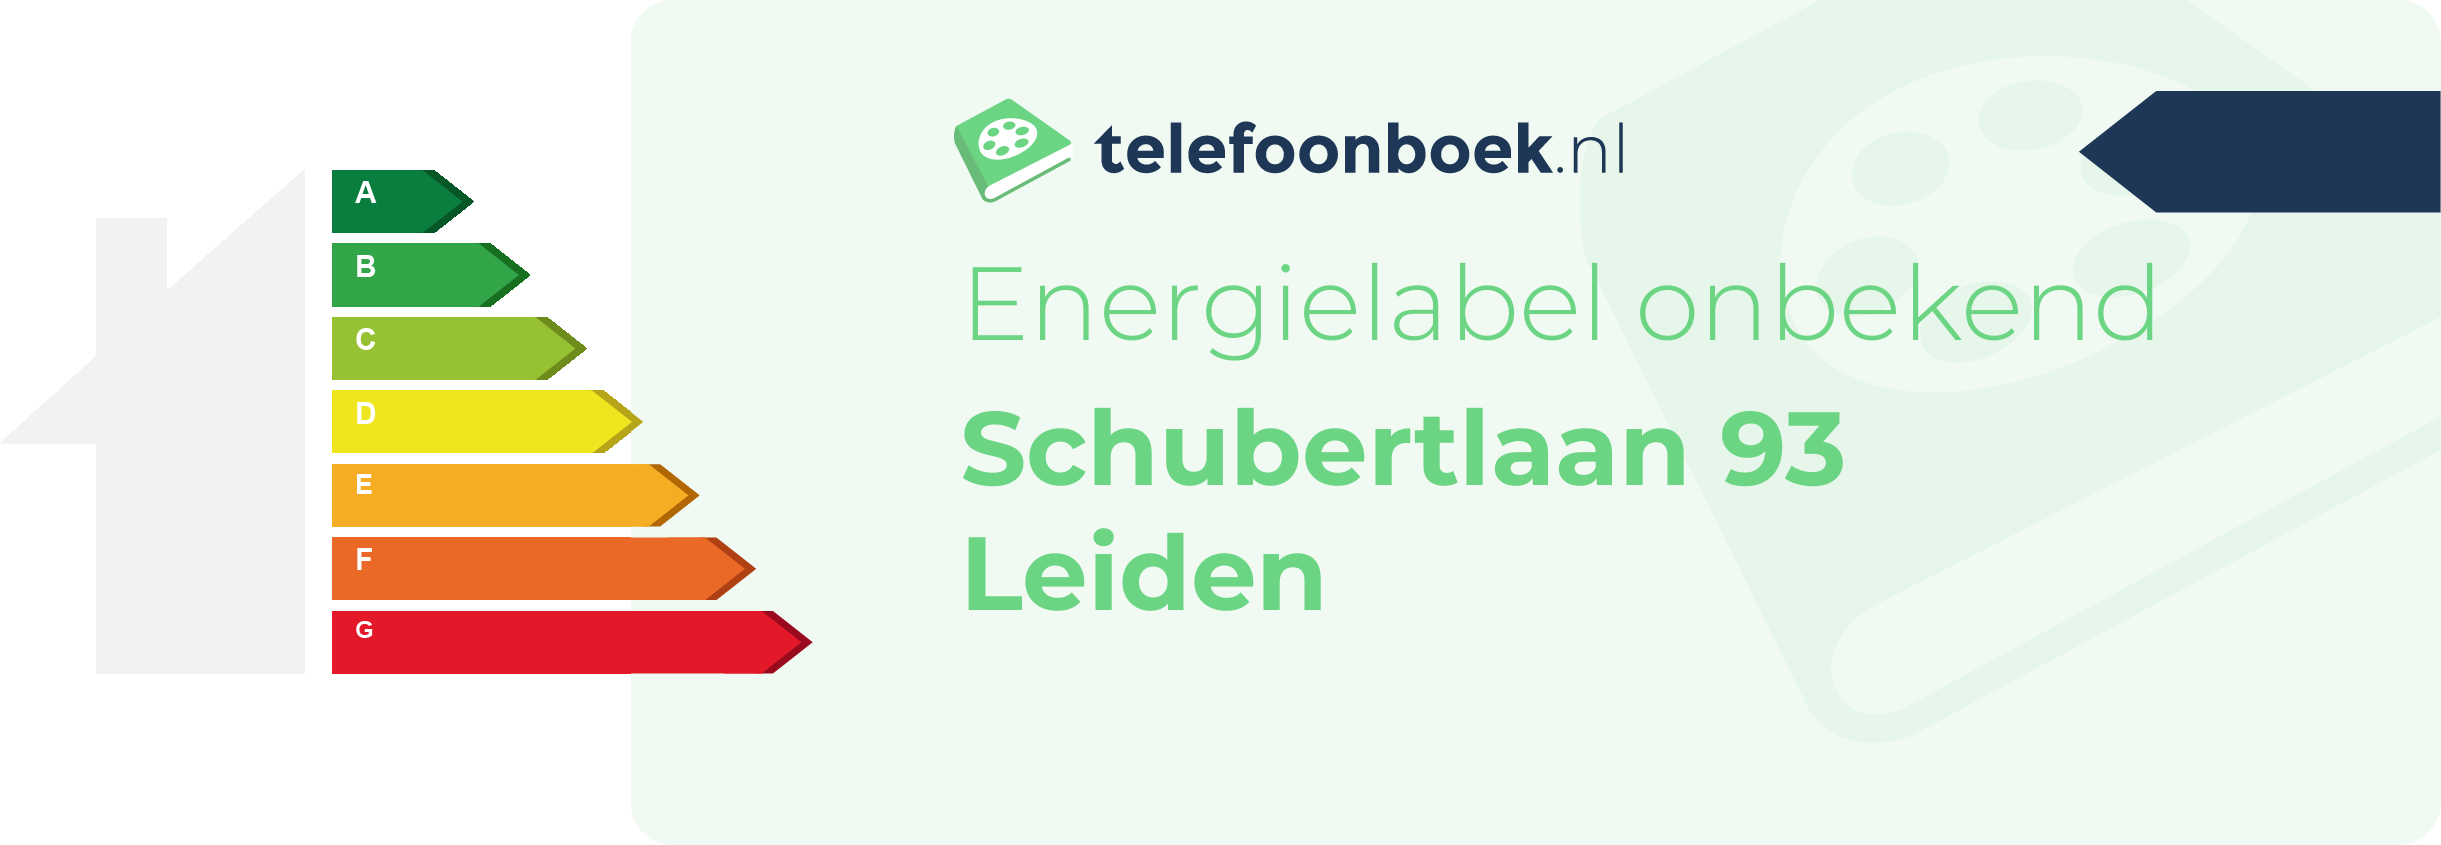 Energielabel Schubertlaan 93 Leiden